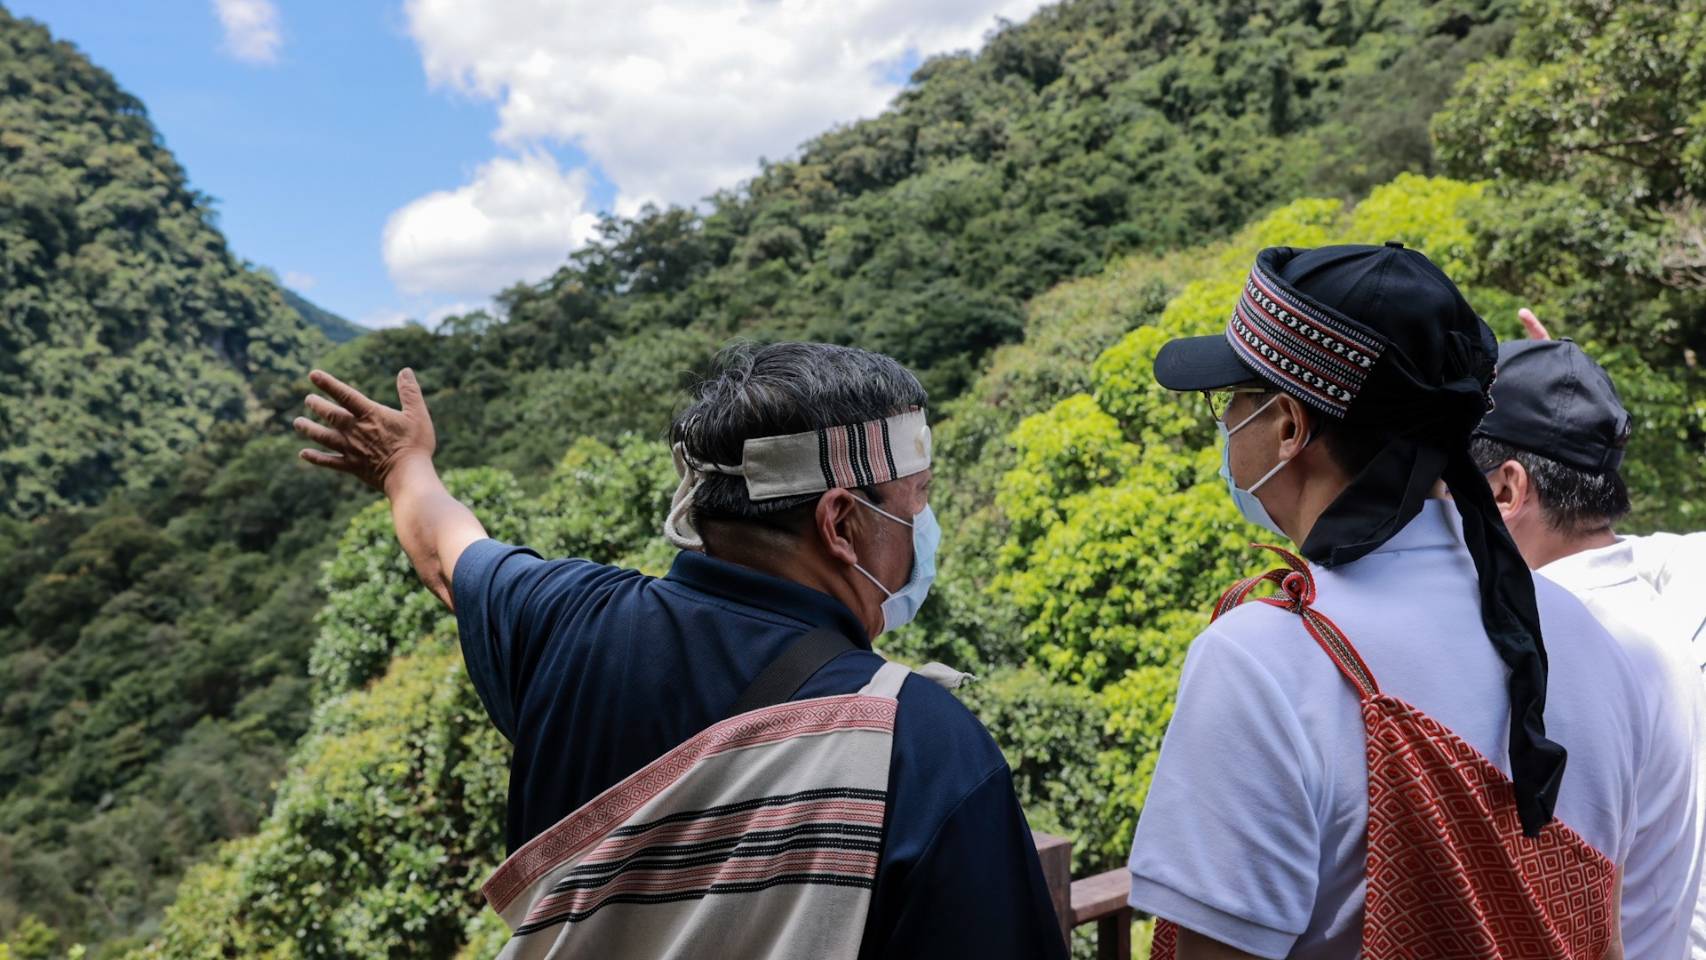 烏來首座原住民主題公園完工啟用  烏來新增生態旅遊秘境